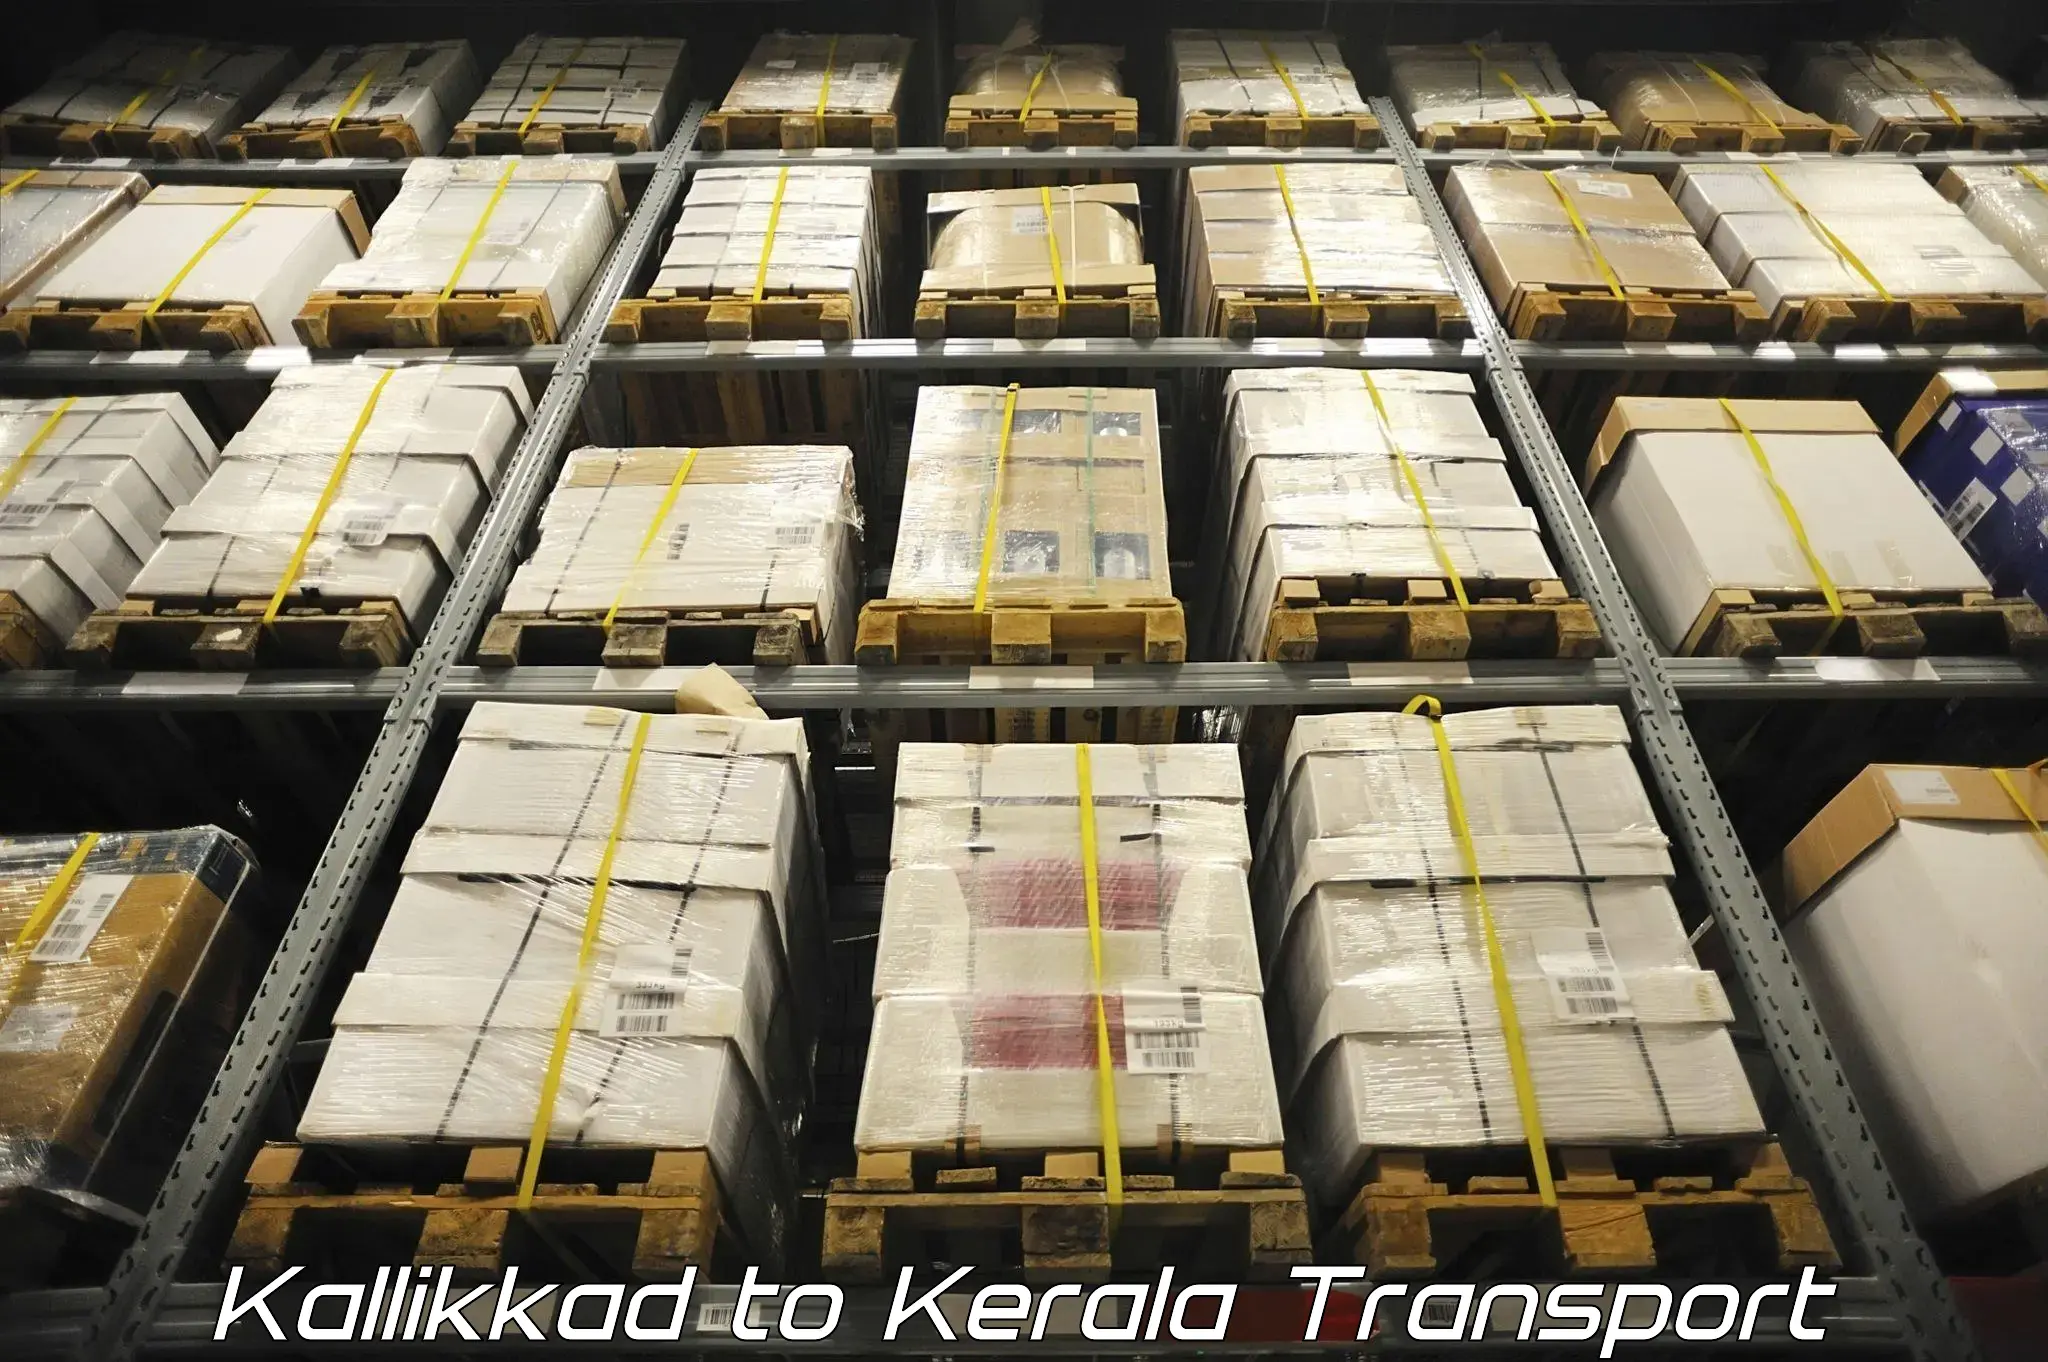 Land transport services in Kallikkad to Cherthala